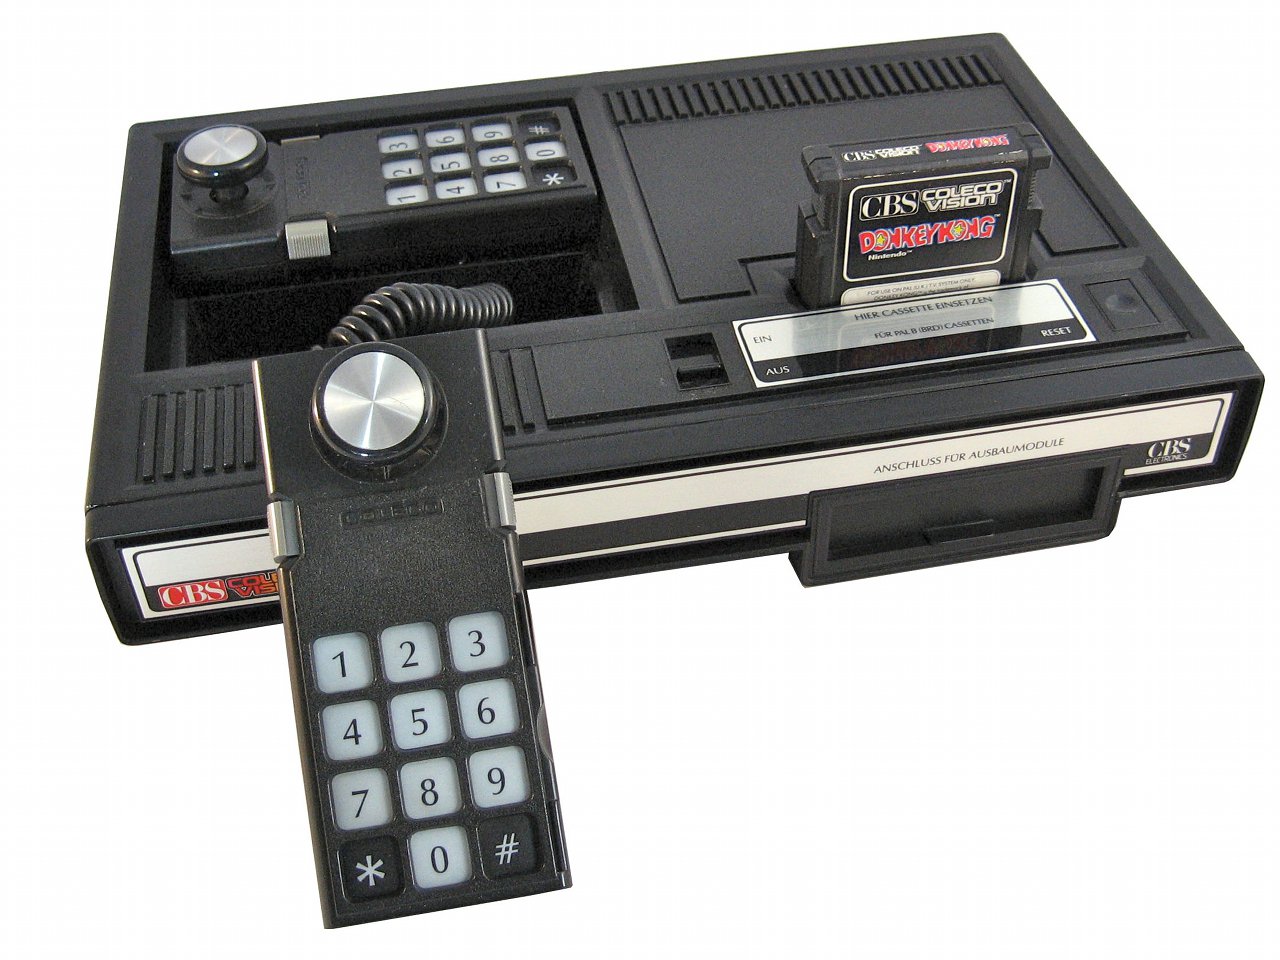 Die ColecoVision-Konsole wurde 1983 zusammen mit dem Spielhallenhit Donkey Kong verkauft. (Bild: Torsten Othmer)